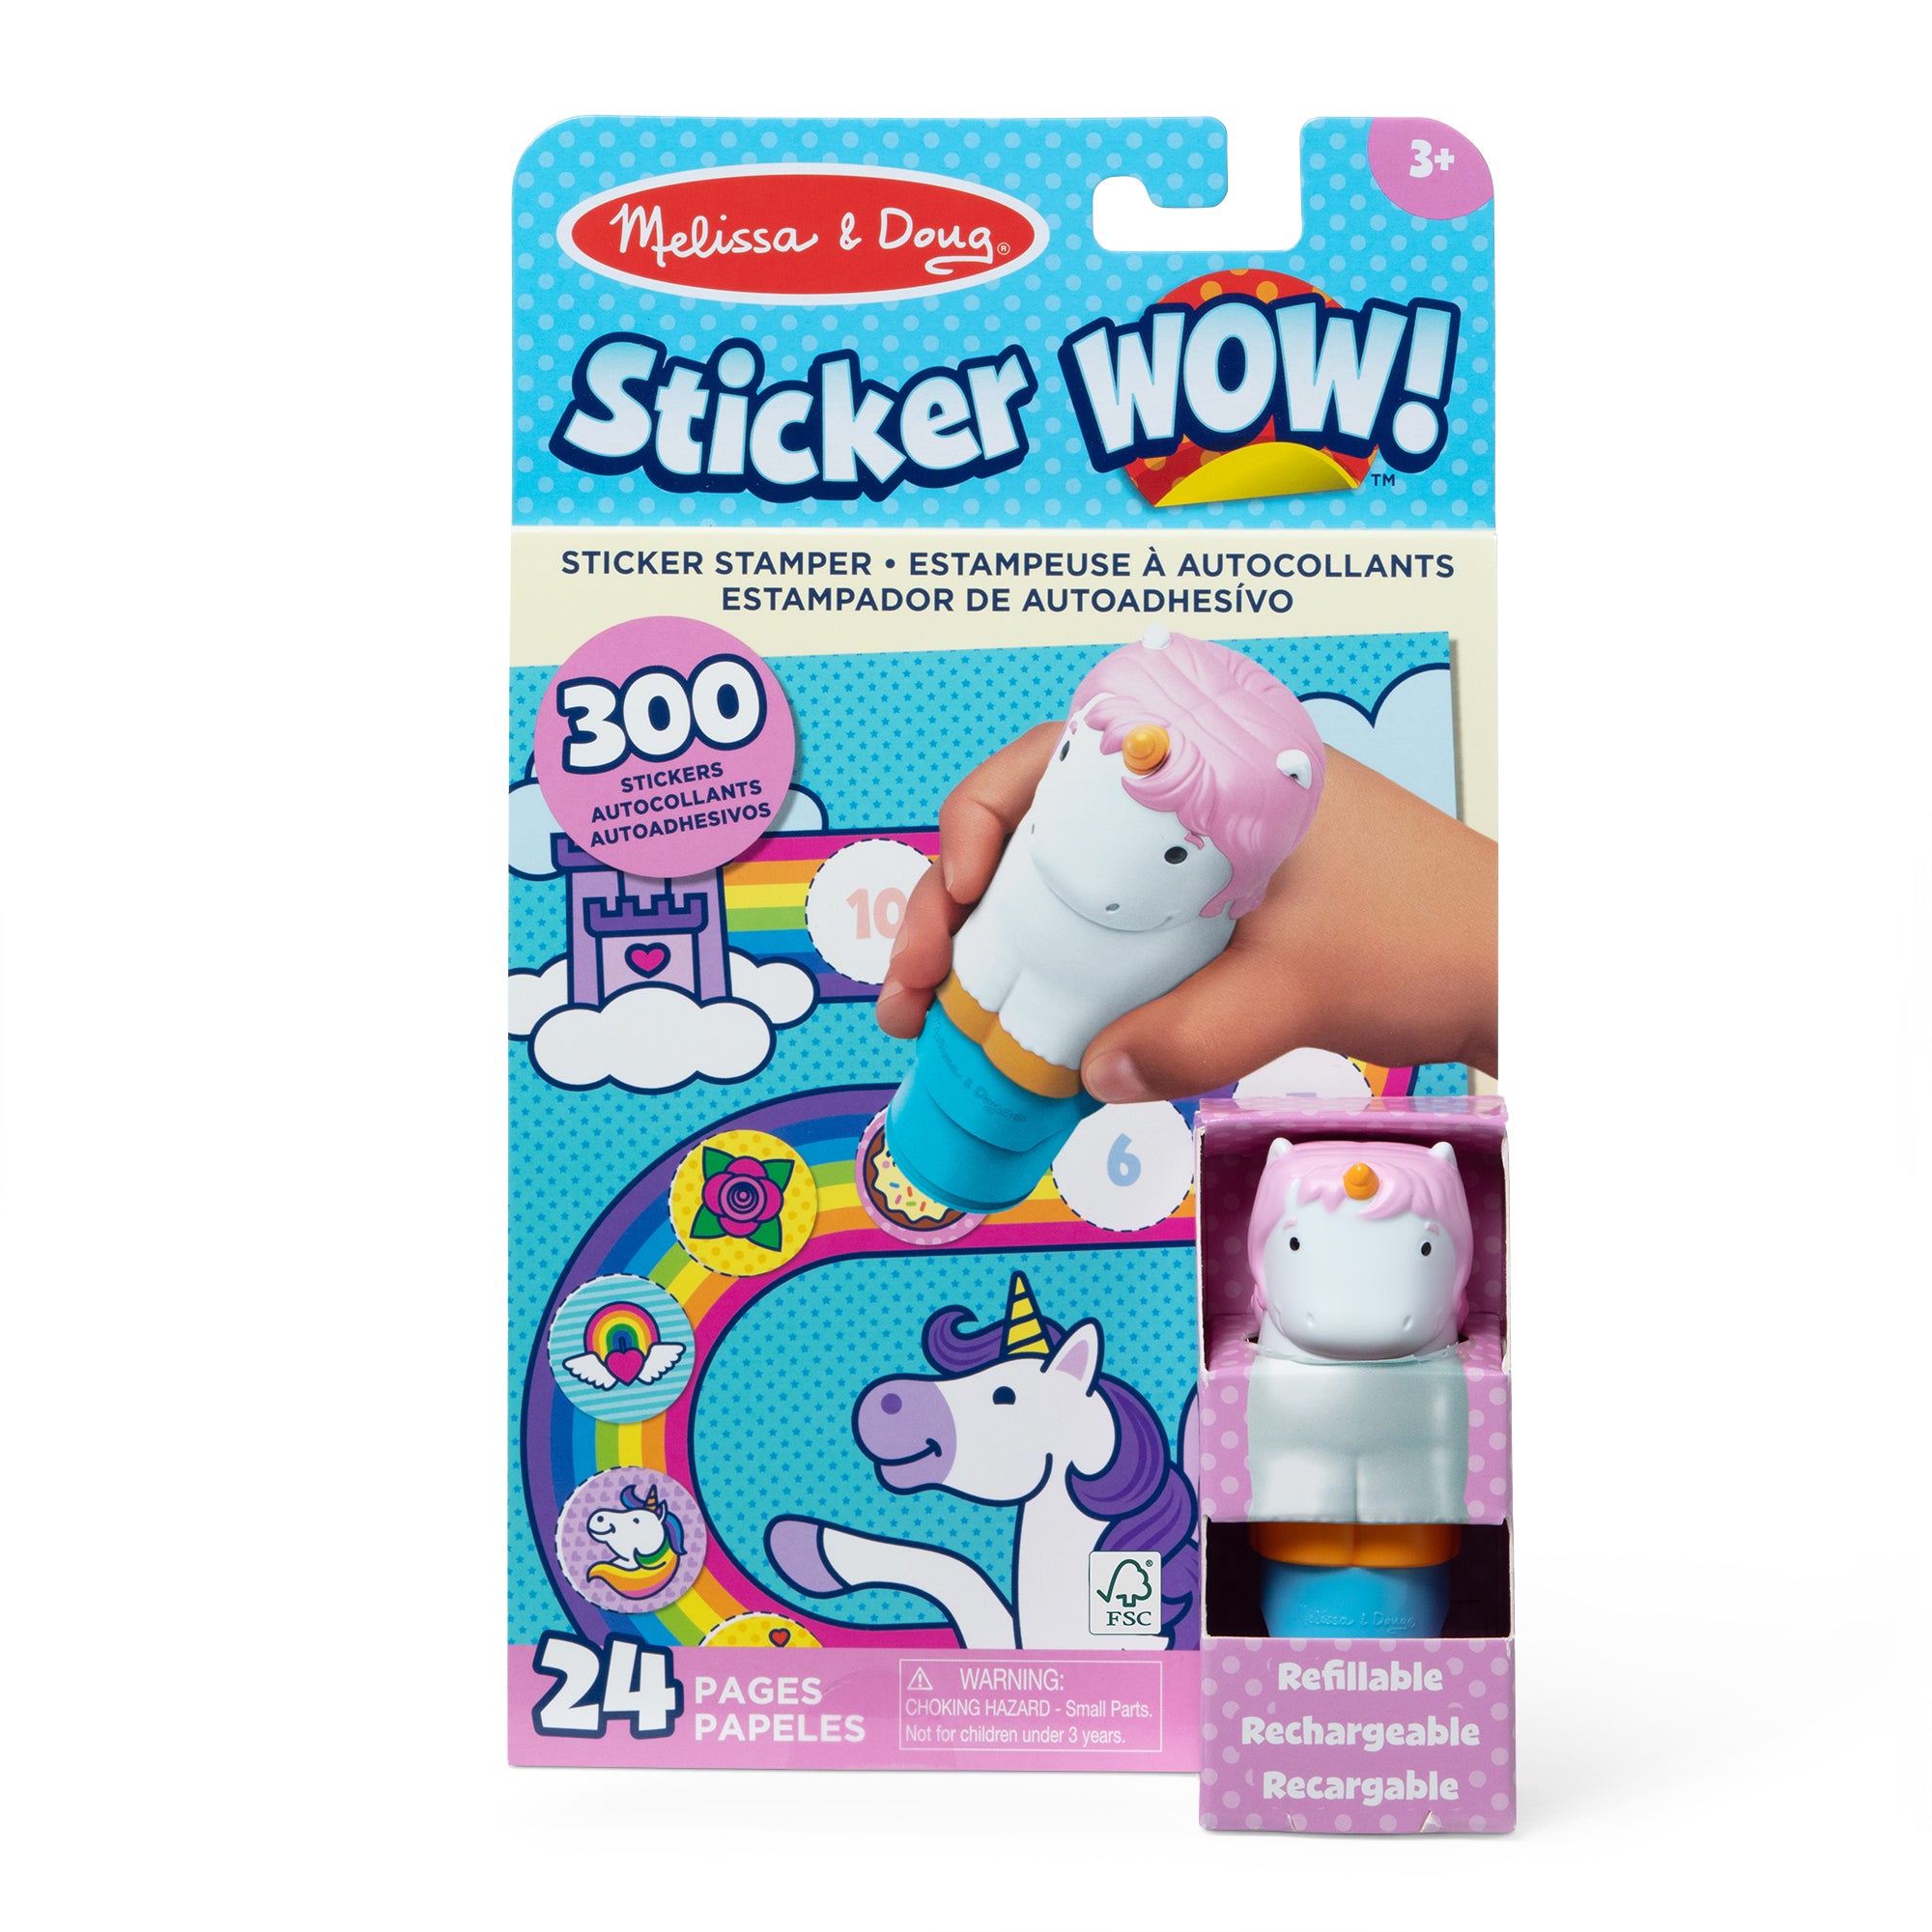 Sticker WOW! Activity Pad & Sticker Stamper - Unicorn